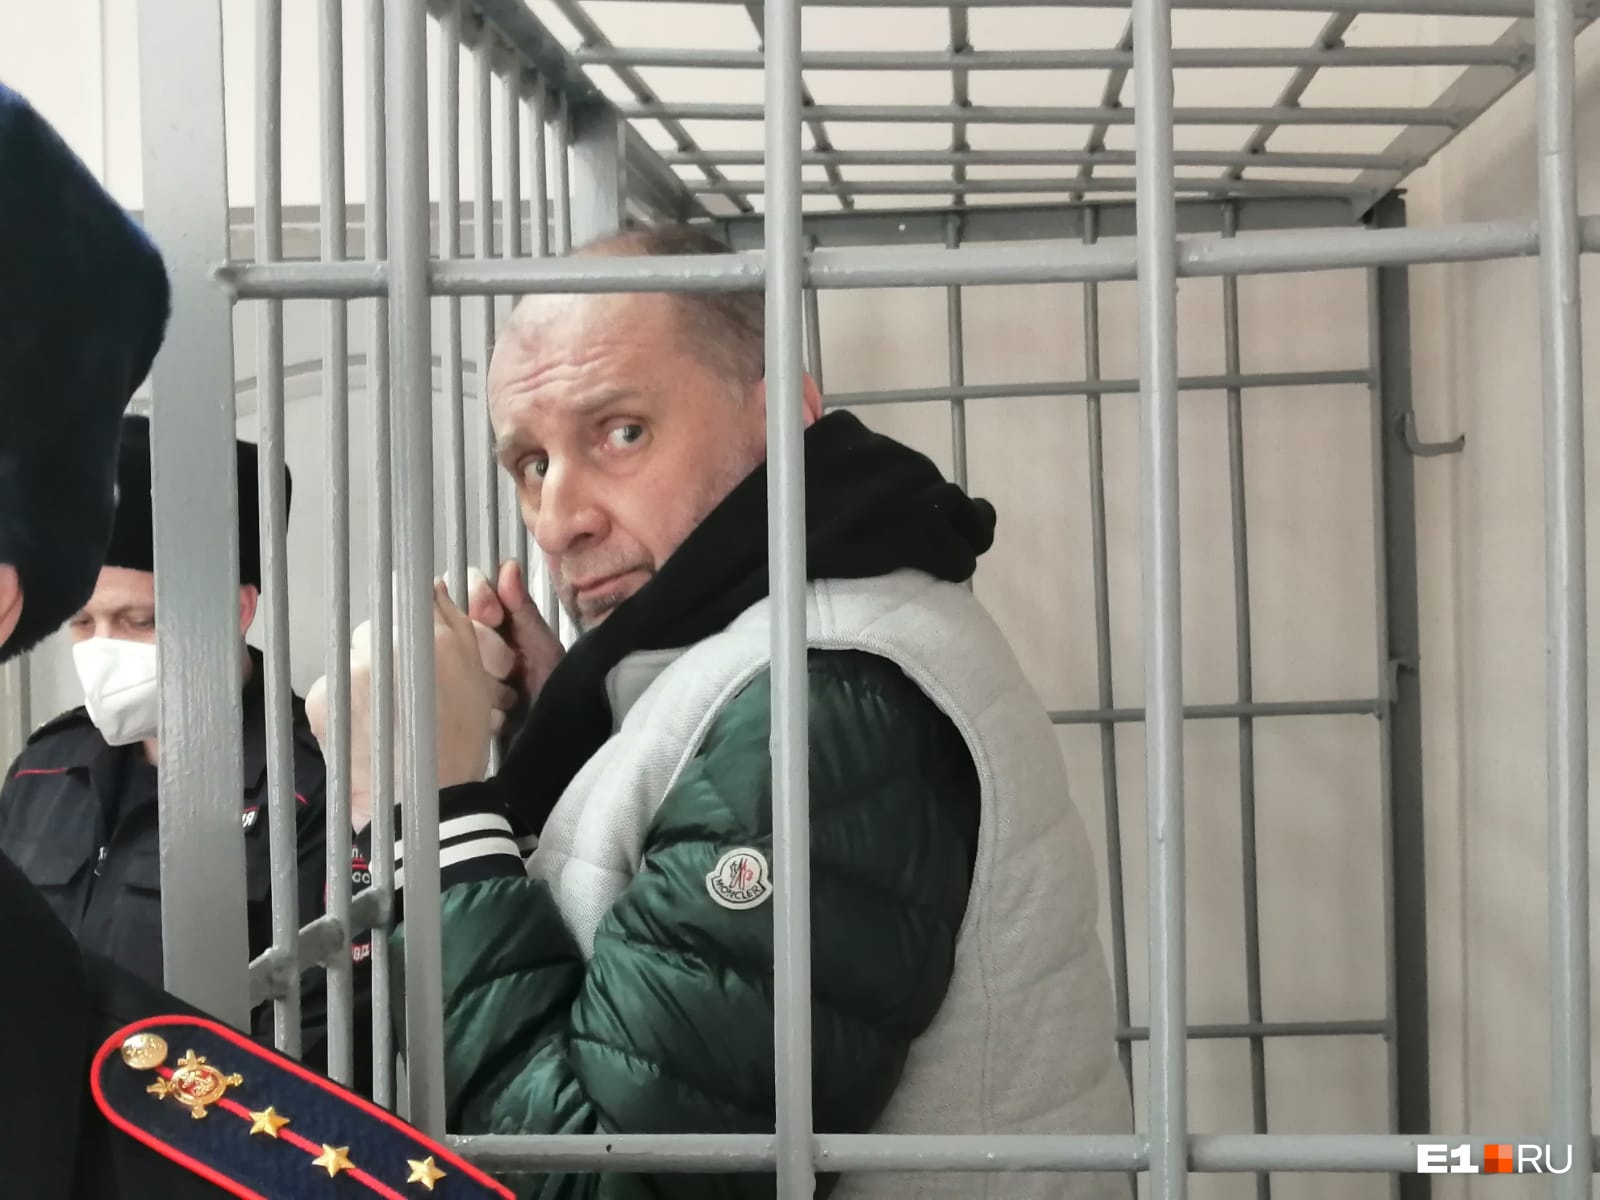 В Екатеринбурге экс-лидера ОПГ, подозреваемого в убийстве, освободили из-под стражи. Объясняем почему